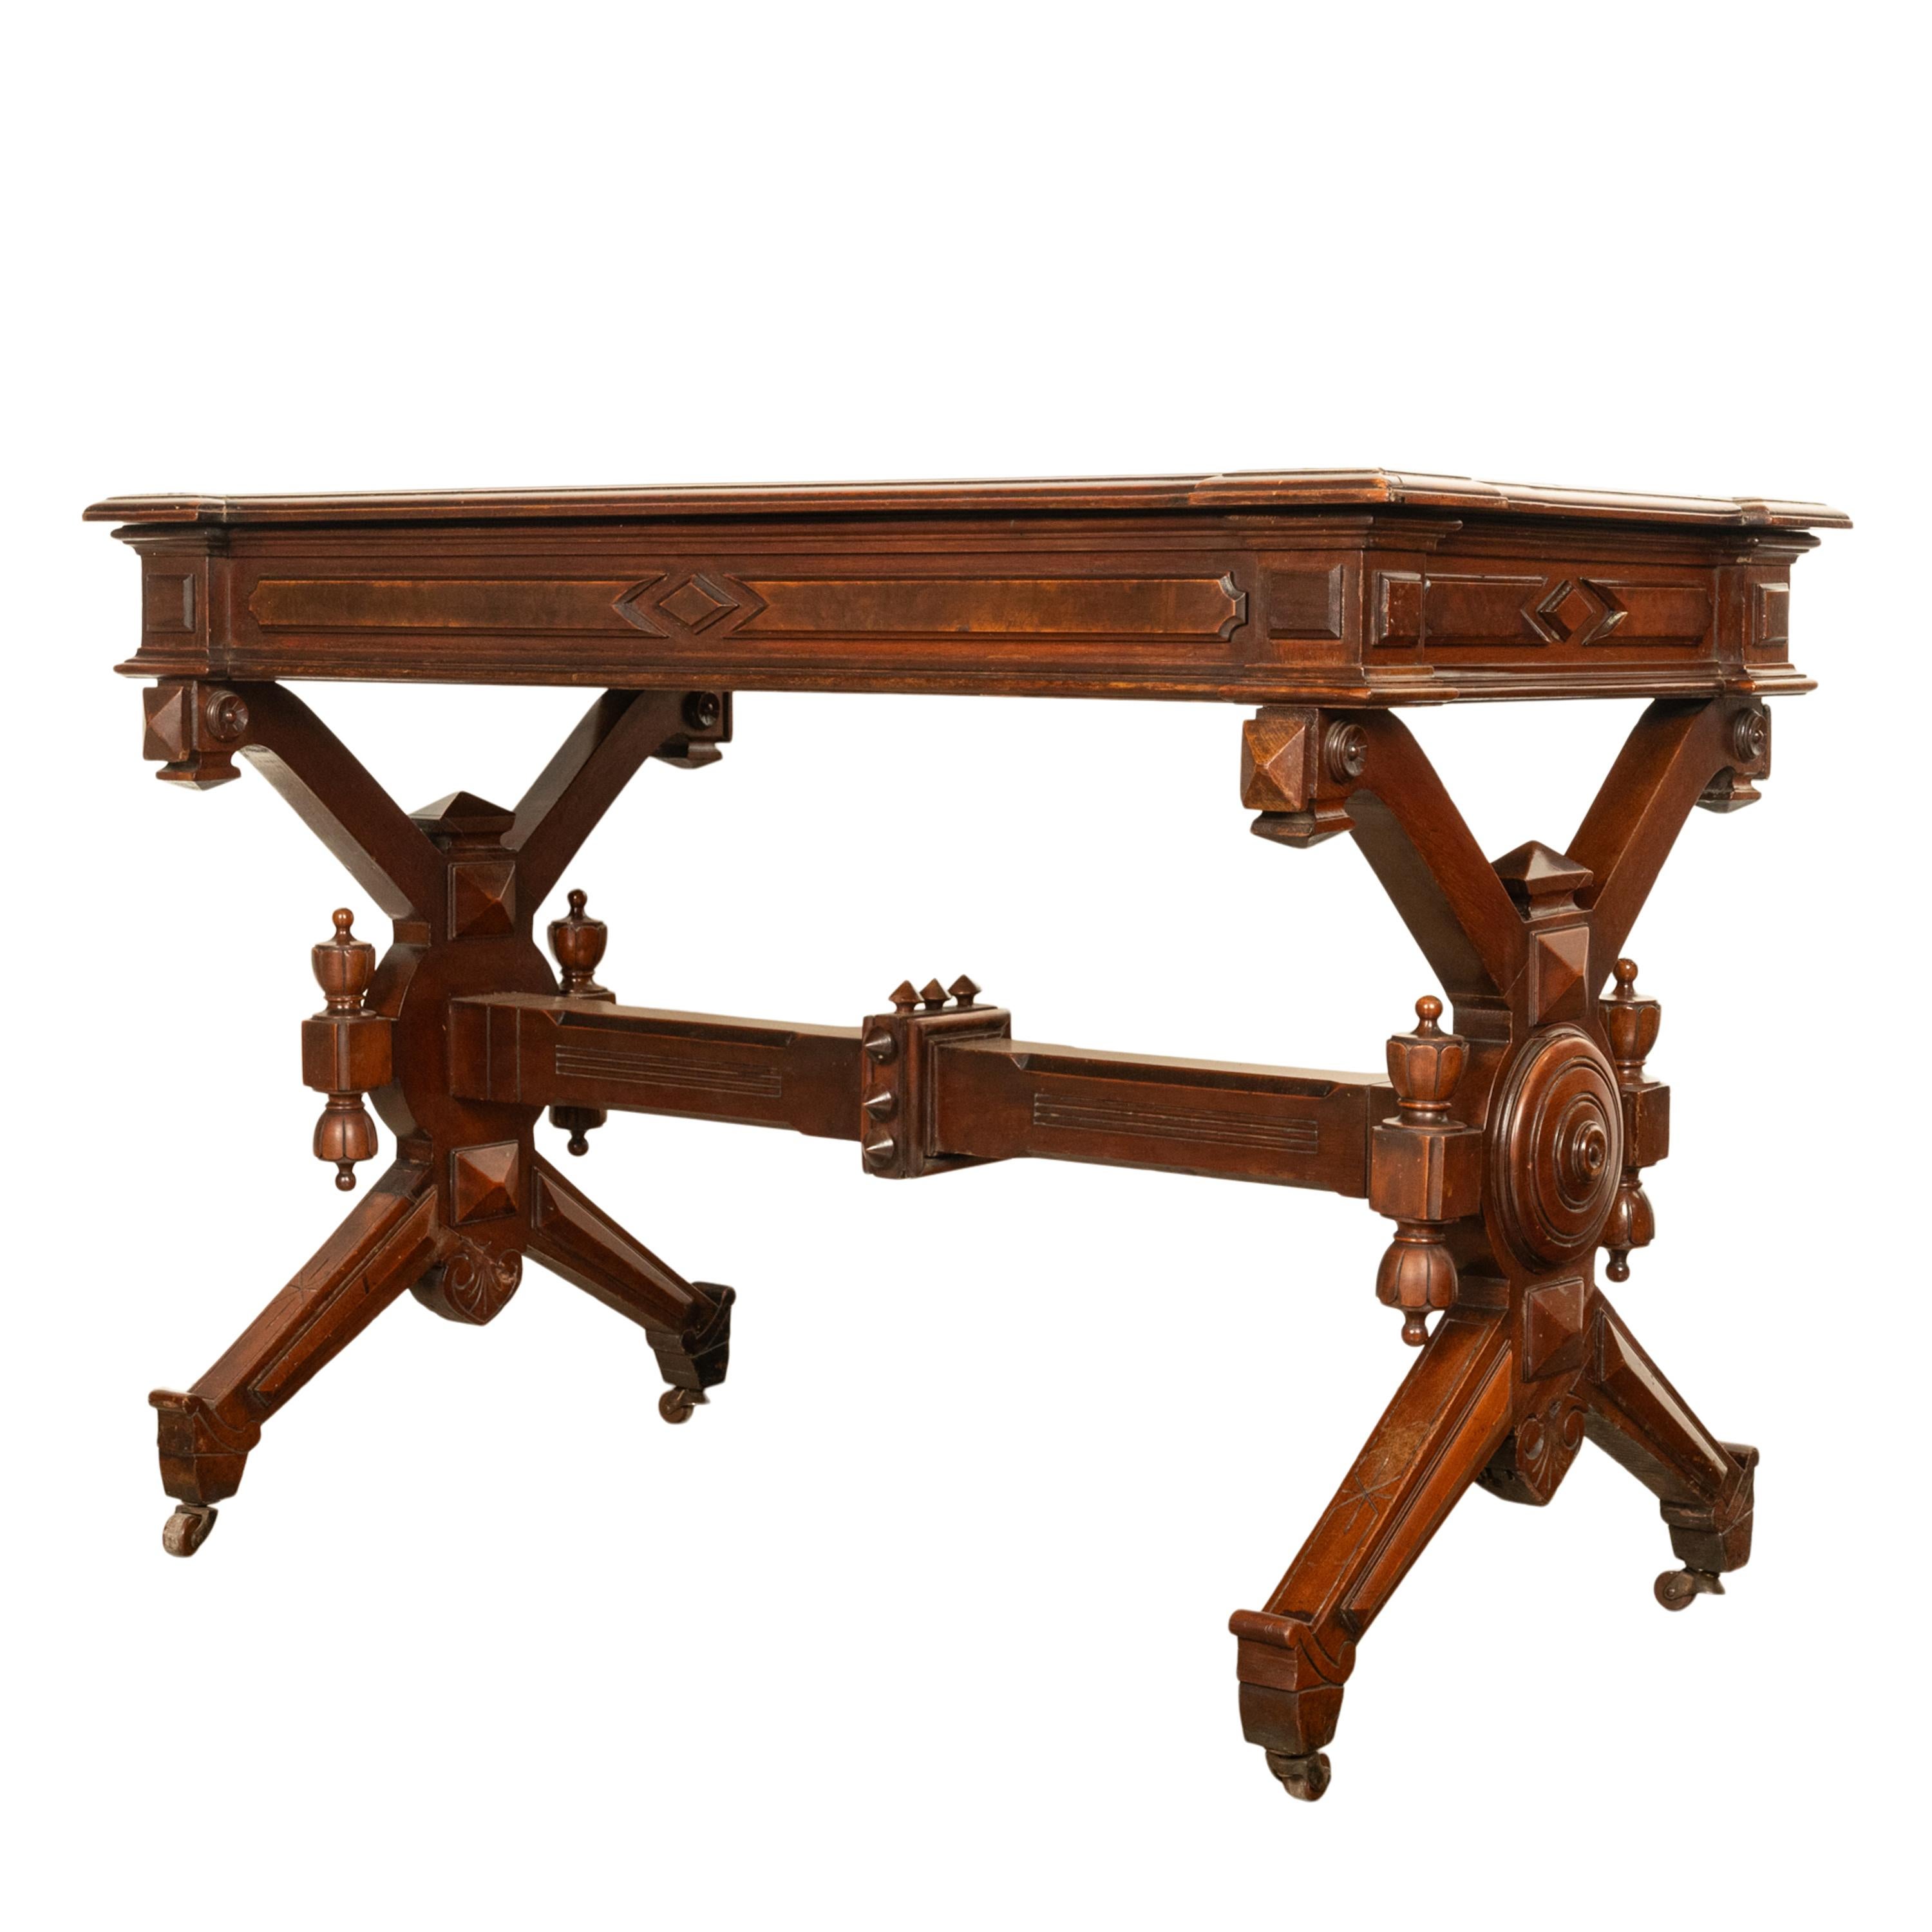 Antique American Walnut Renaissance Revival Aesthetic Movement Desk Table 1875 For Sale 3